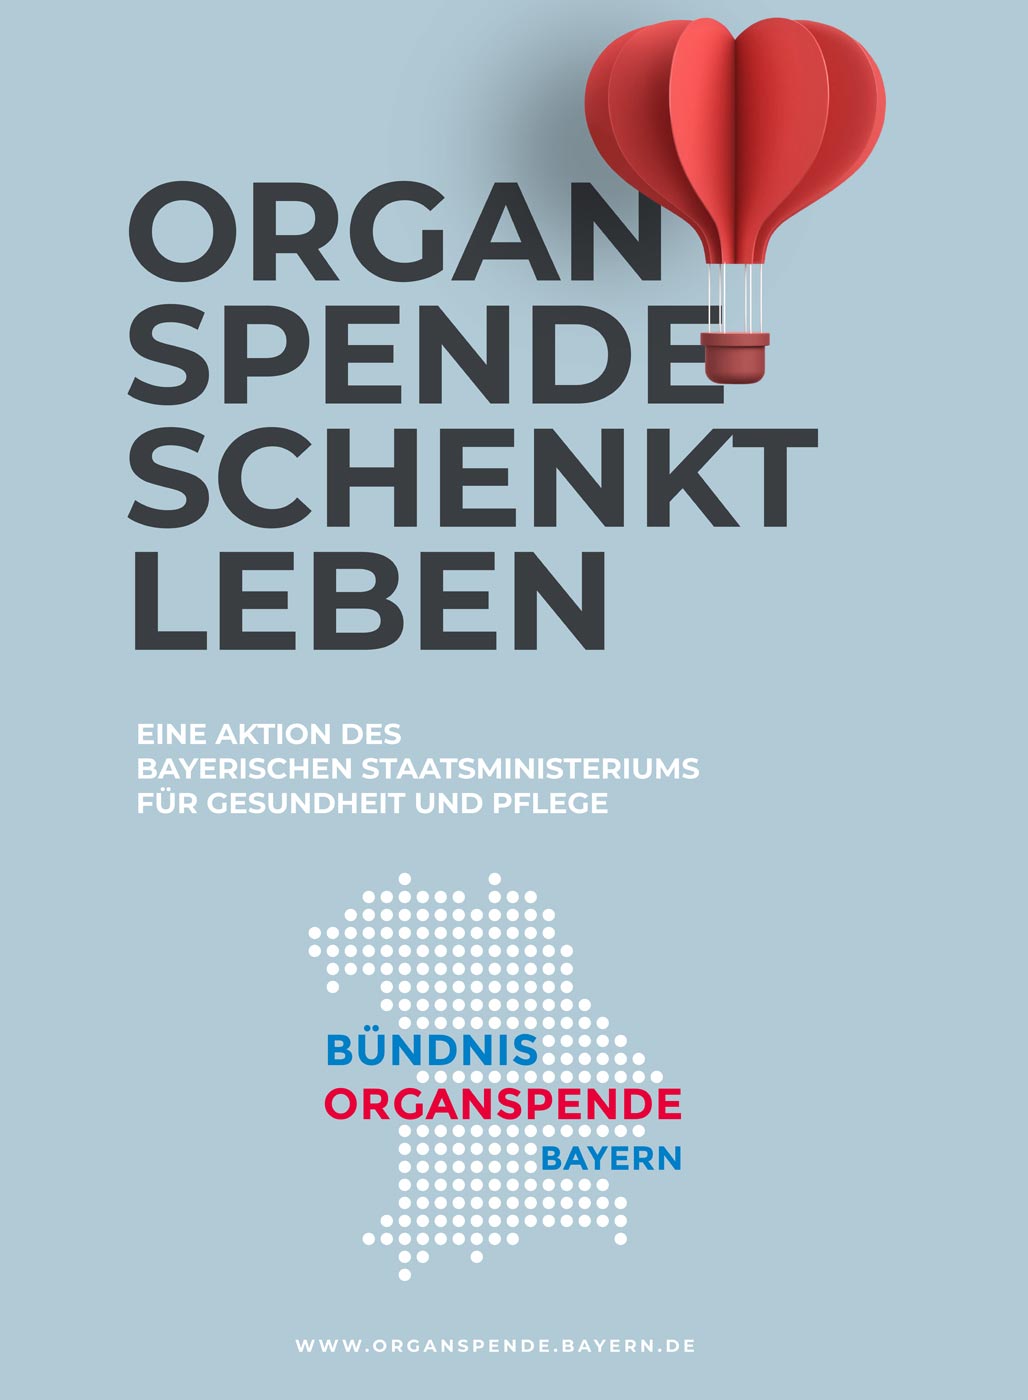 Organspende schenkt Leben - Titelbild der Ausstellungswand Organspende